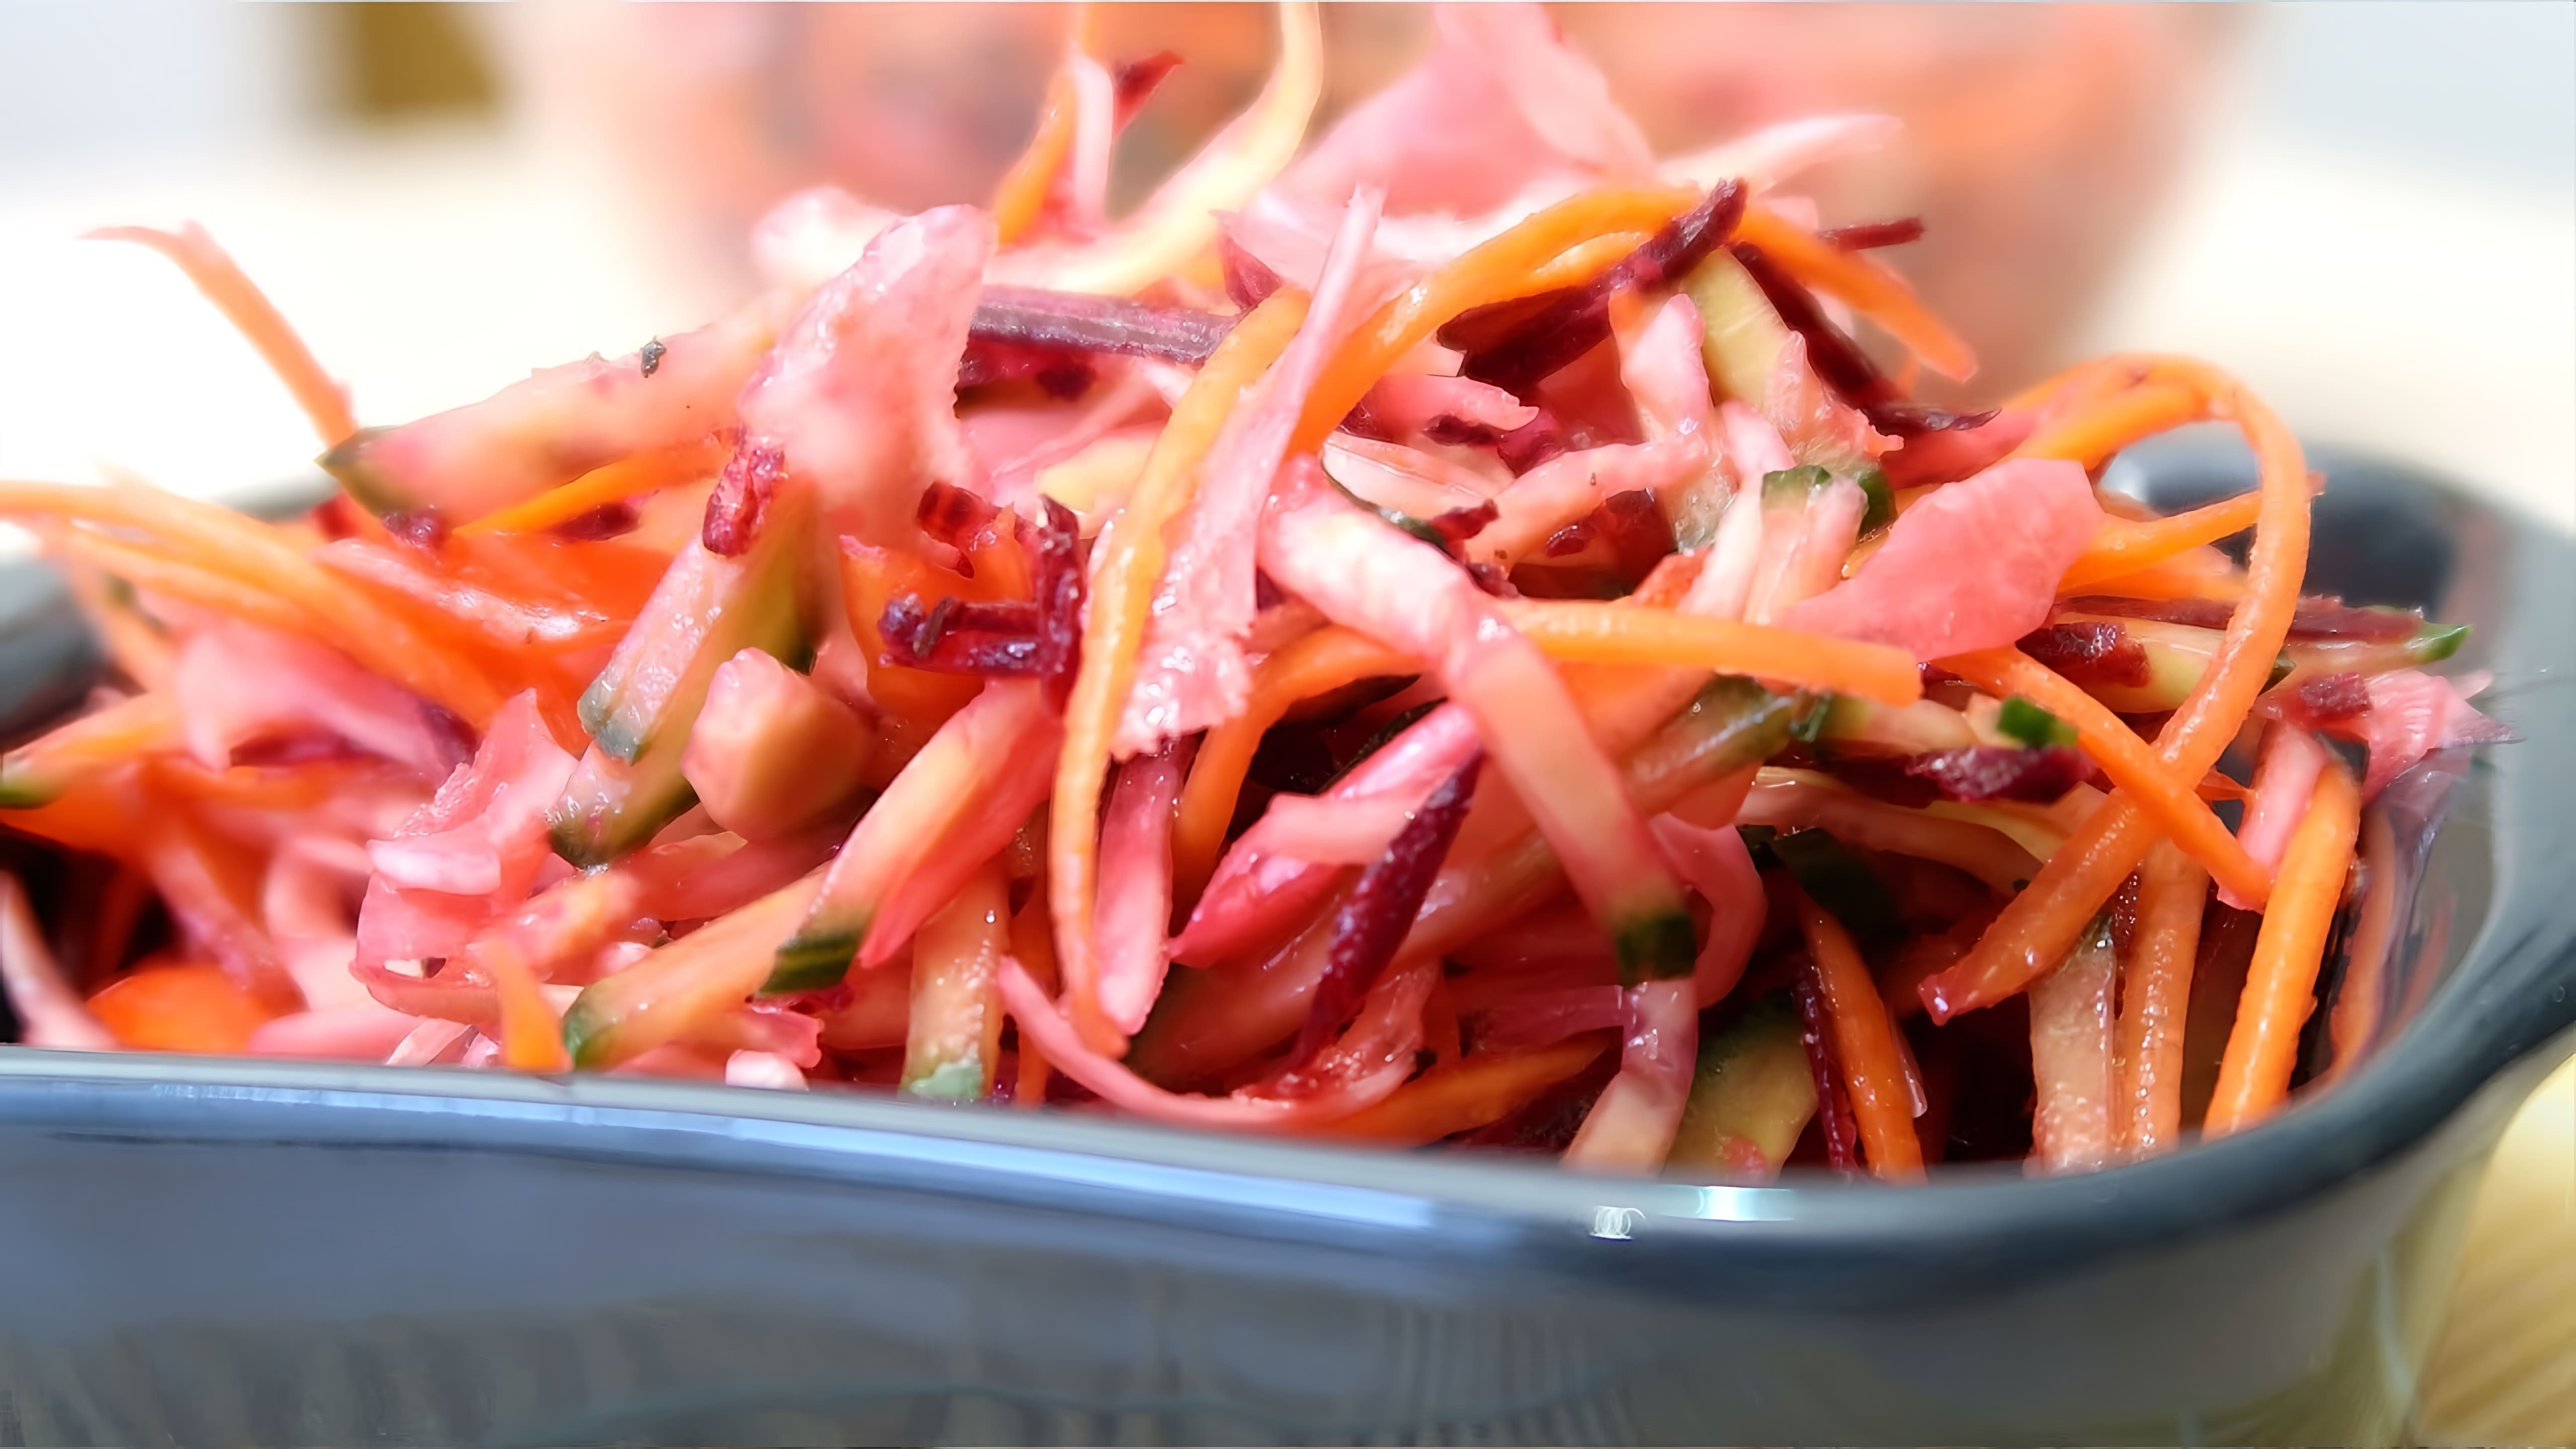 В этом видео демонстрируется процесс приготовления витаминного салата из свежих овощей